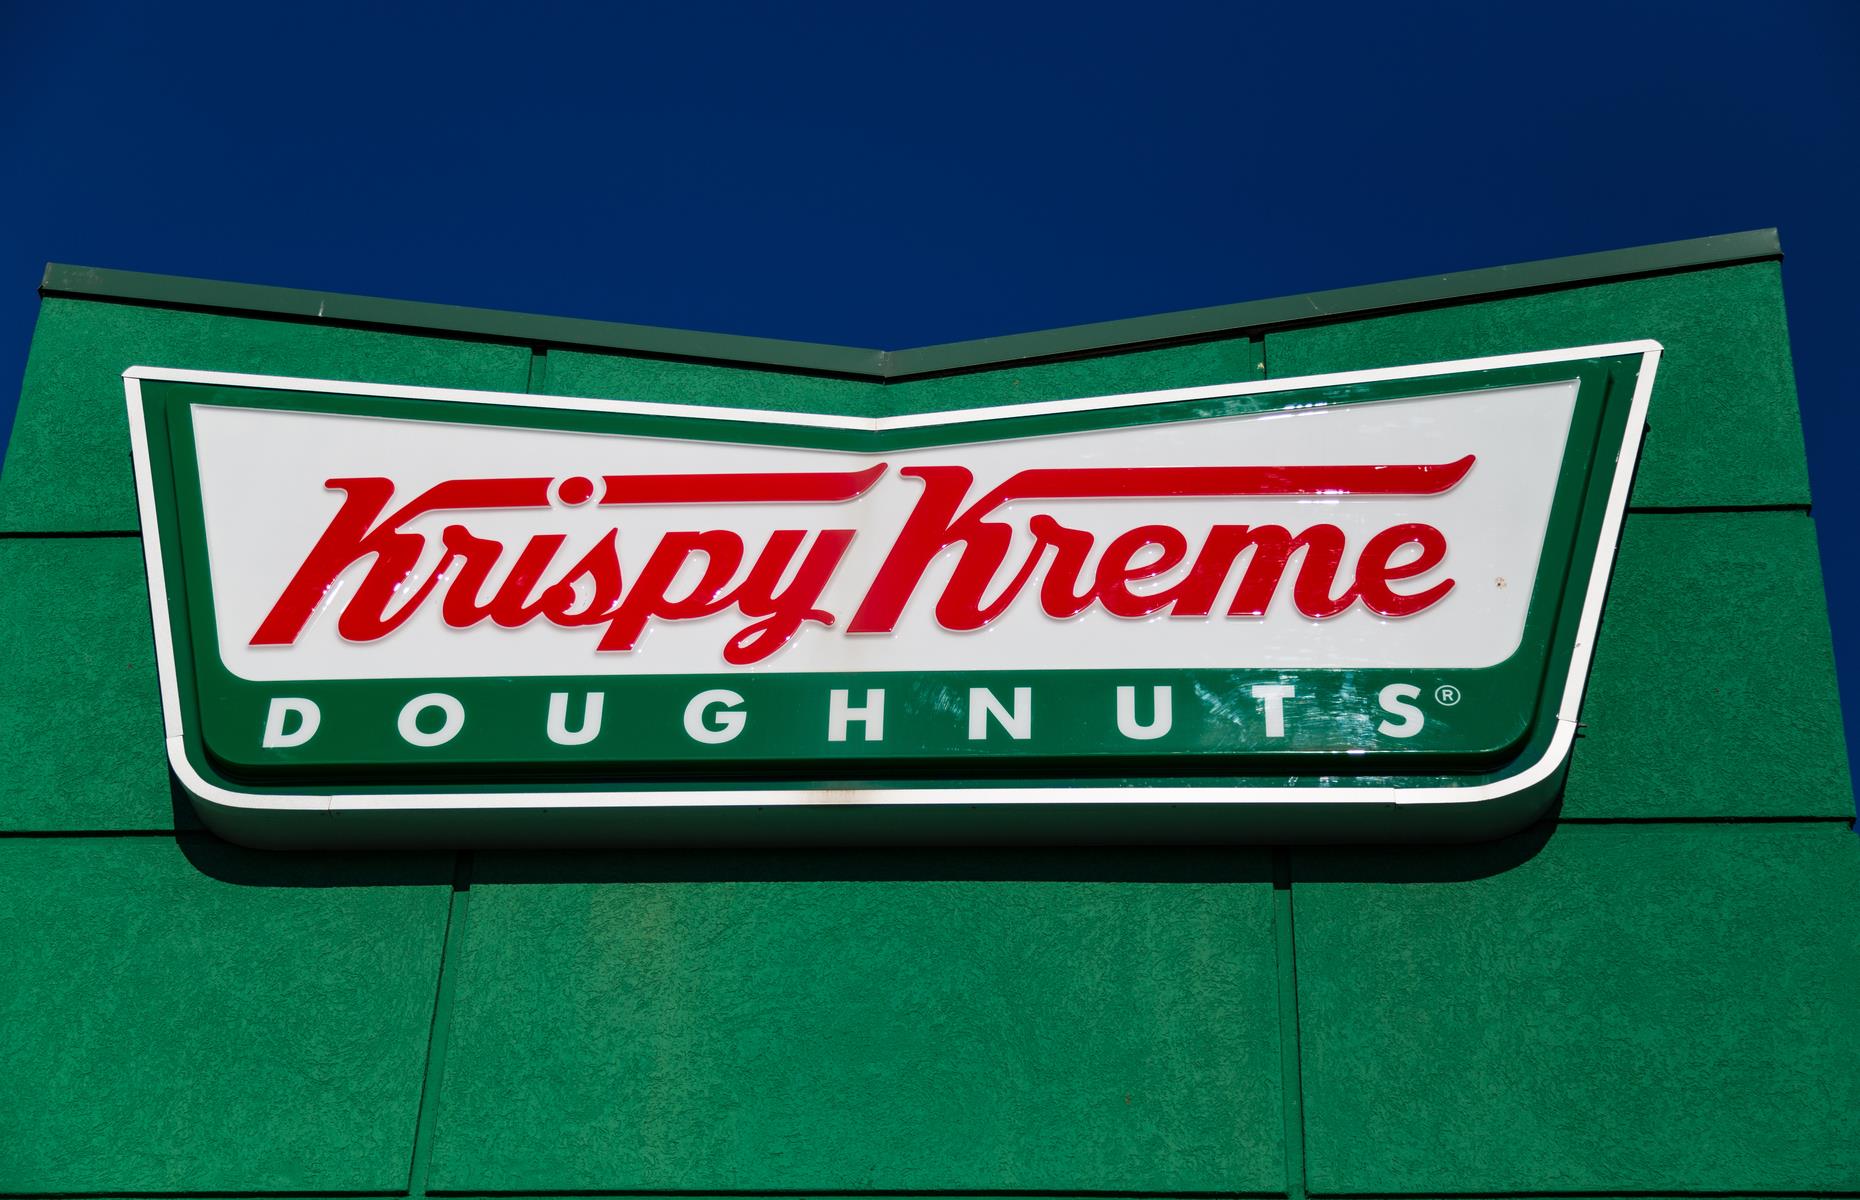 Krispy Kreme created a standard